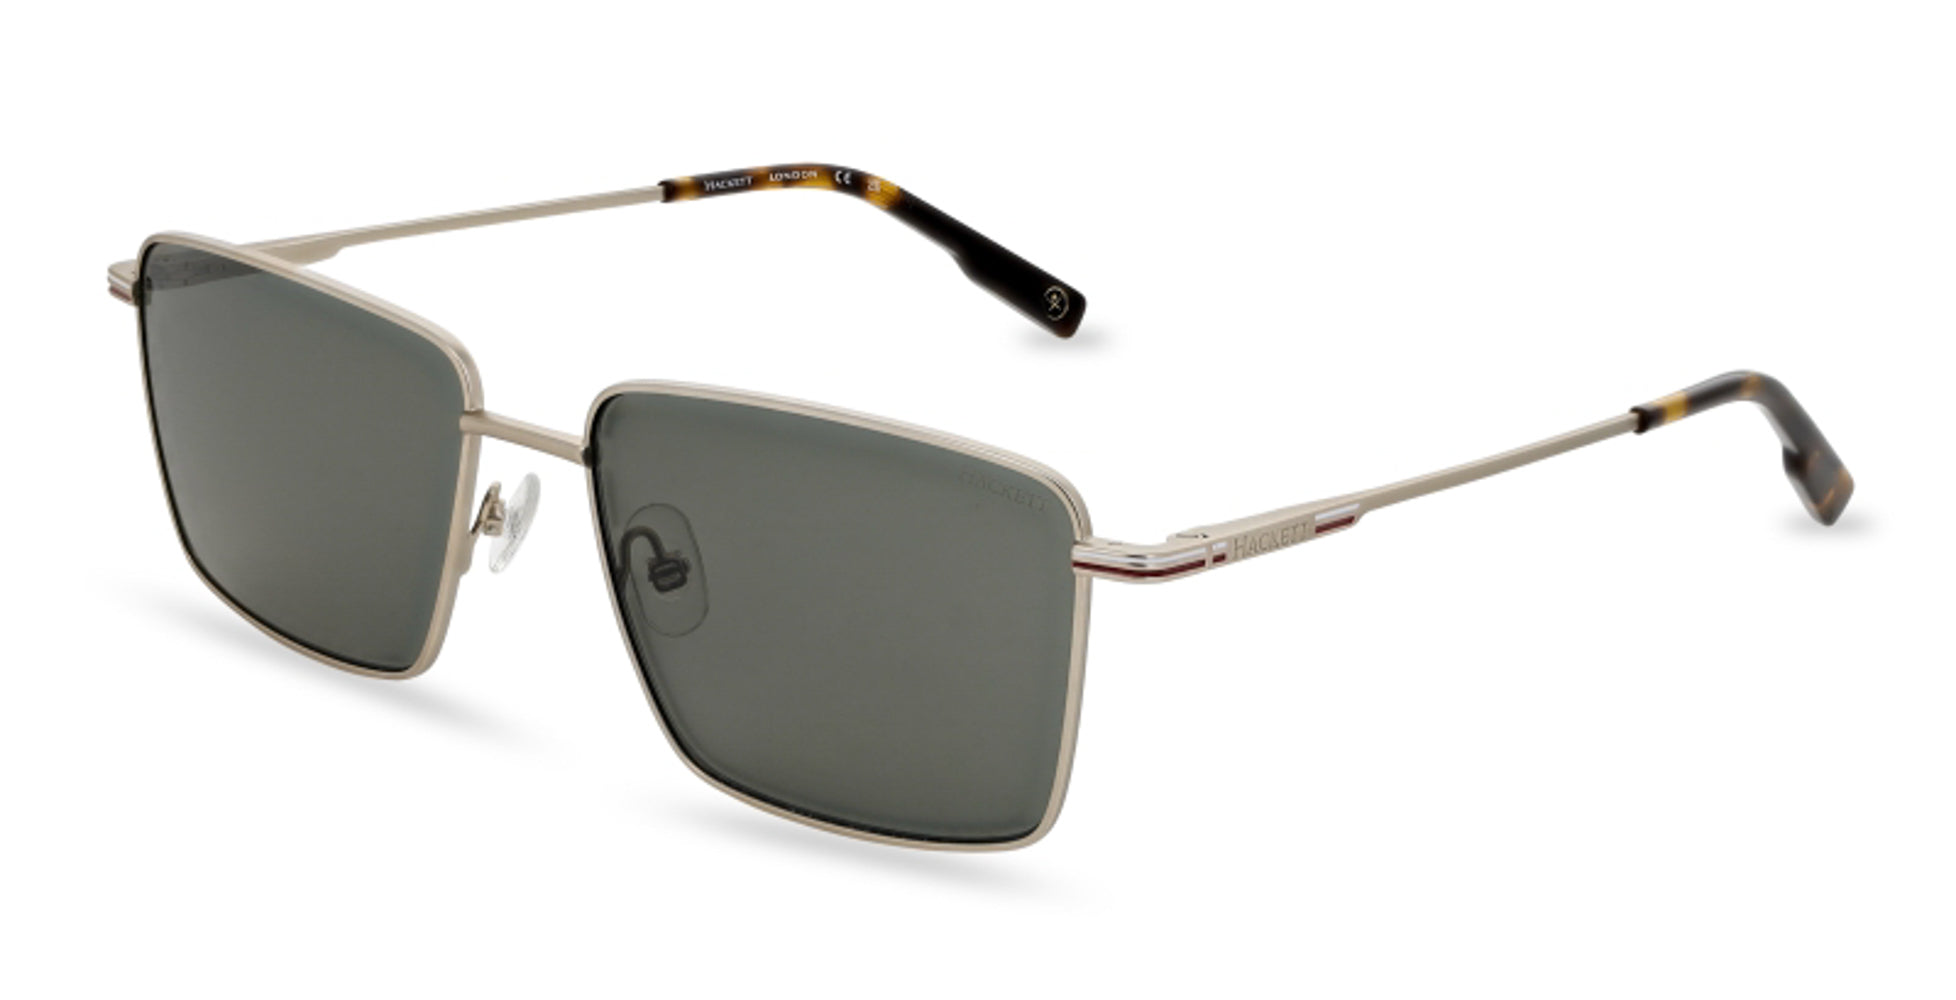 Cloud Sunglasses, / Bespoke Glasses, / Celestial Sunglasses, / Custom  Glasses, / Unique Accessories, / Cloud Glasses - Etsy